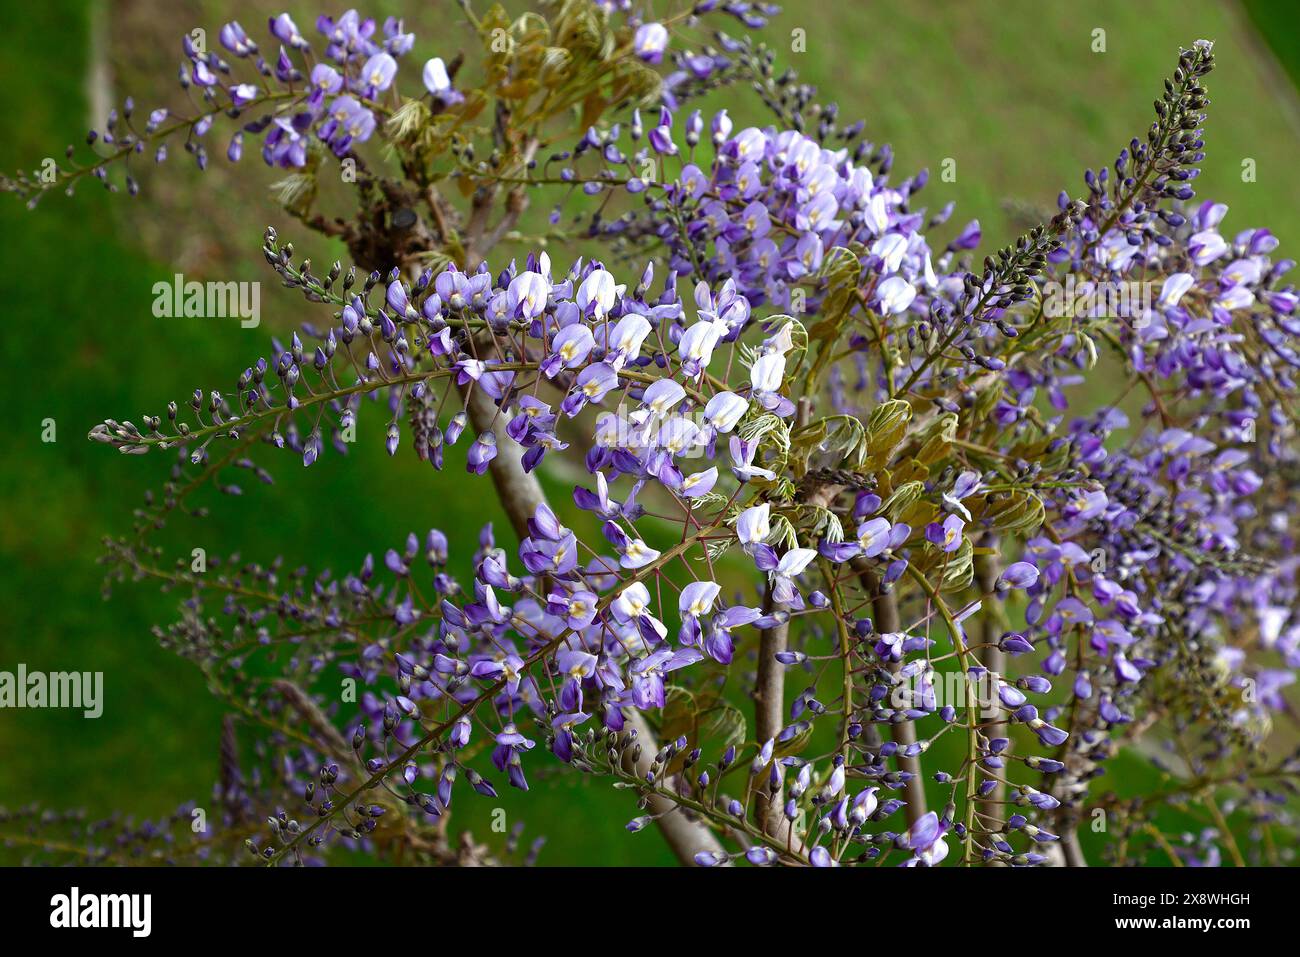 Nahaufnahme der frischen neuen blassviolettblauen und tiefviolettblauen Blüten und der neuen frischen Blätter des Gartenkletterstrauchs Glycera floribunda domino. Stockfoto